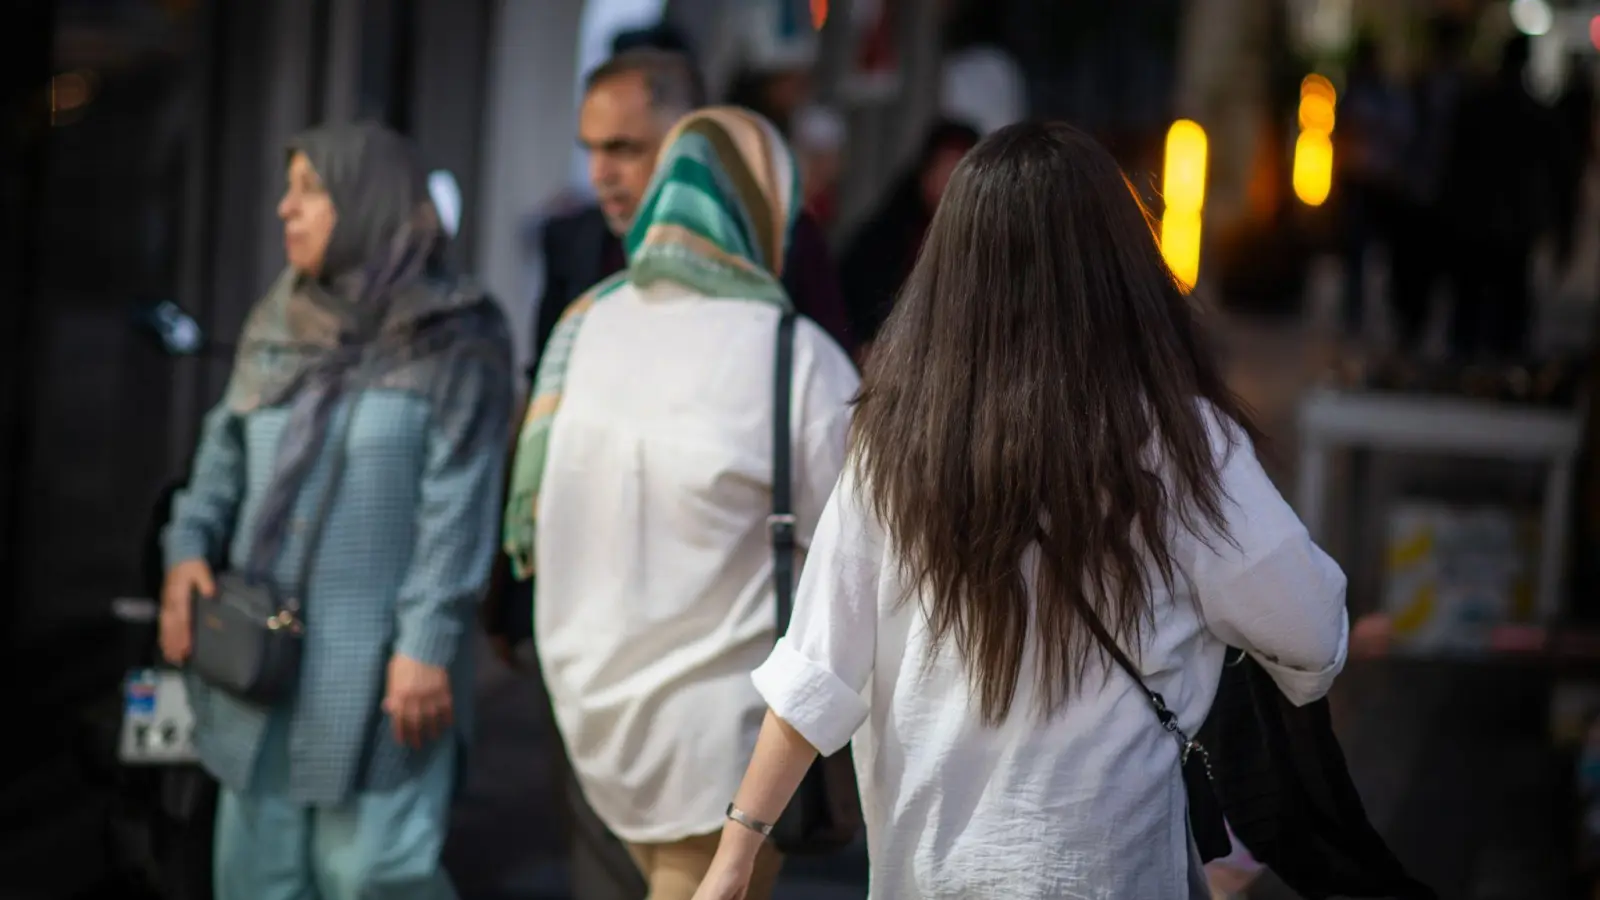 Straßenszene in Teheran. Aus Protest gegen das islamische Herrschaftssystem ignorieren viele Frauen die Kopftuchpflicht. (Foto: Arne Bänsch/dpa)